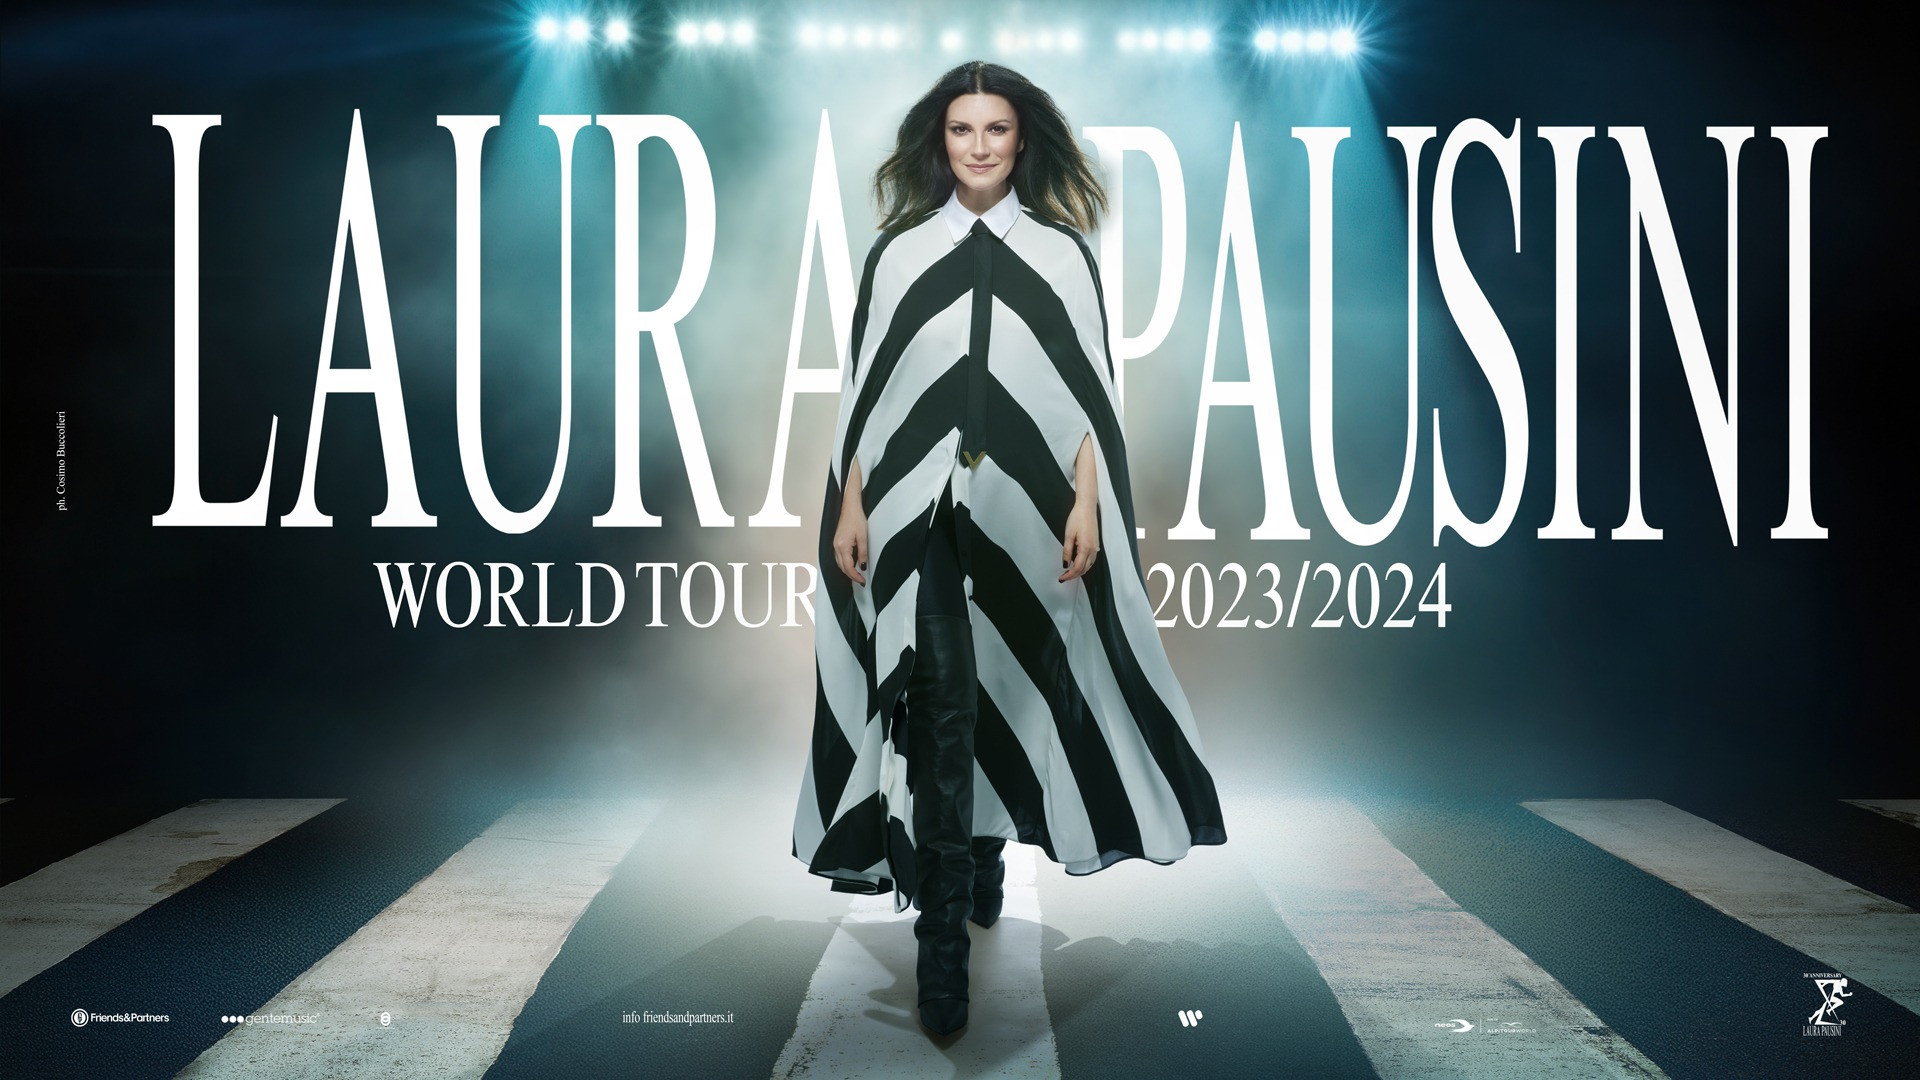 laura pausini tour mundial 2023